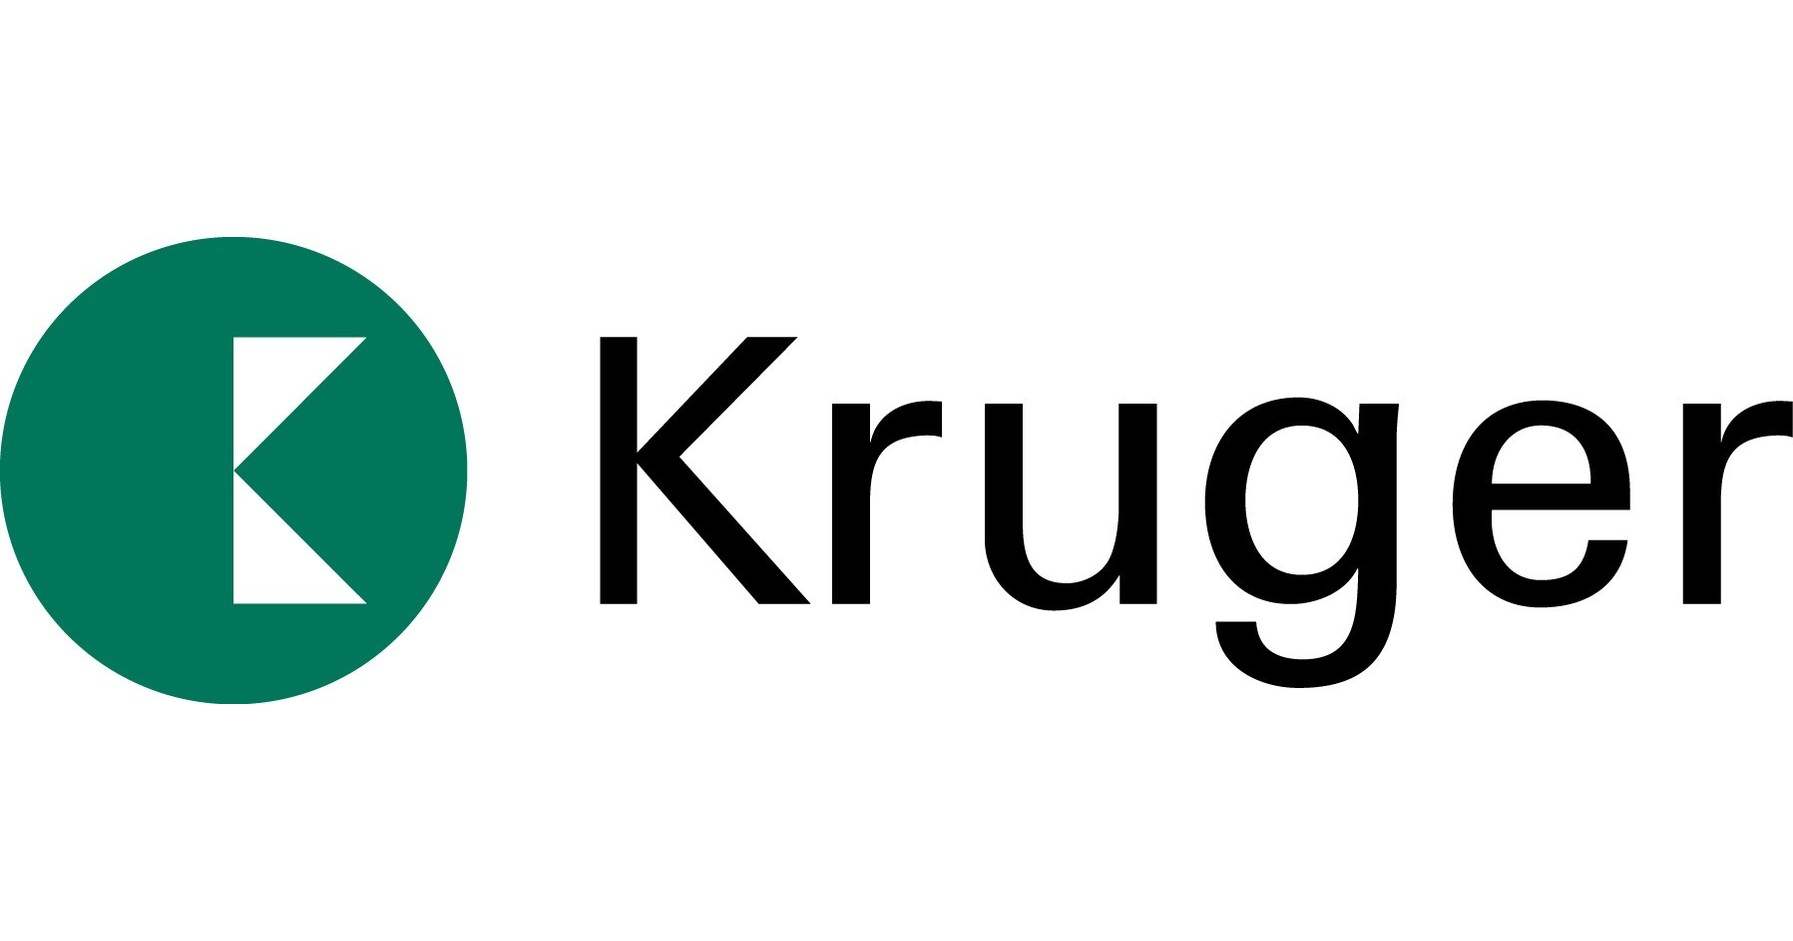 Kruger logo